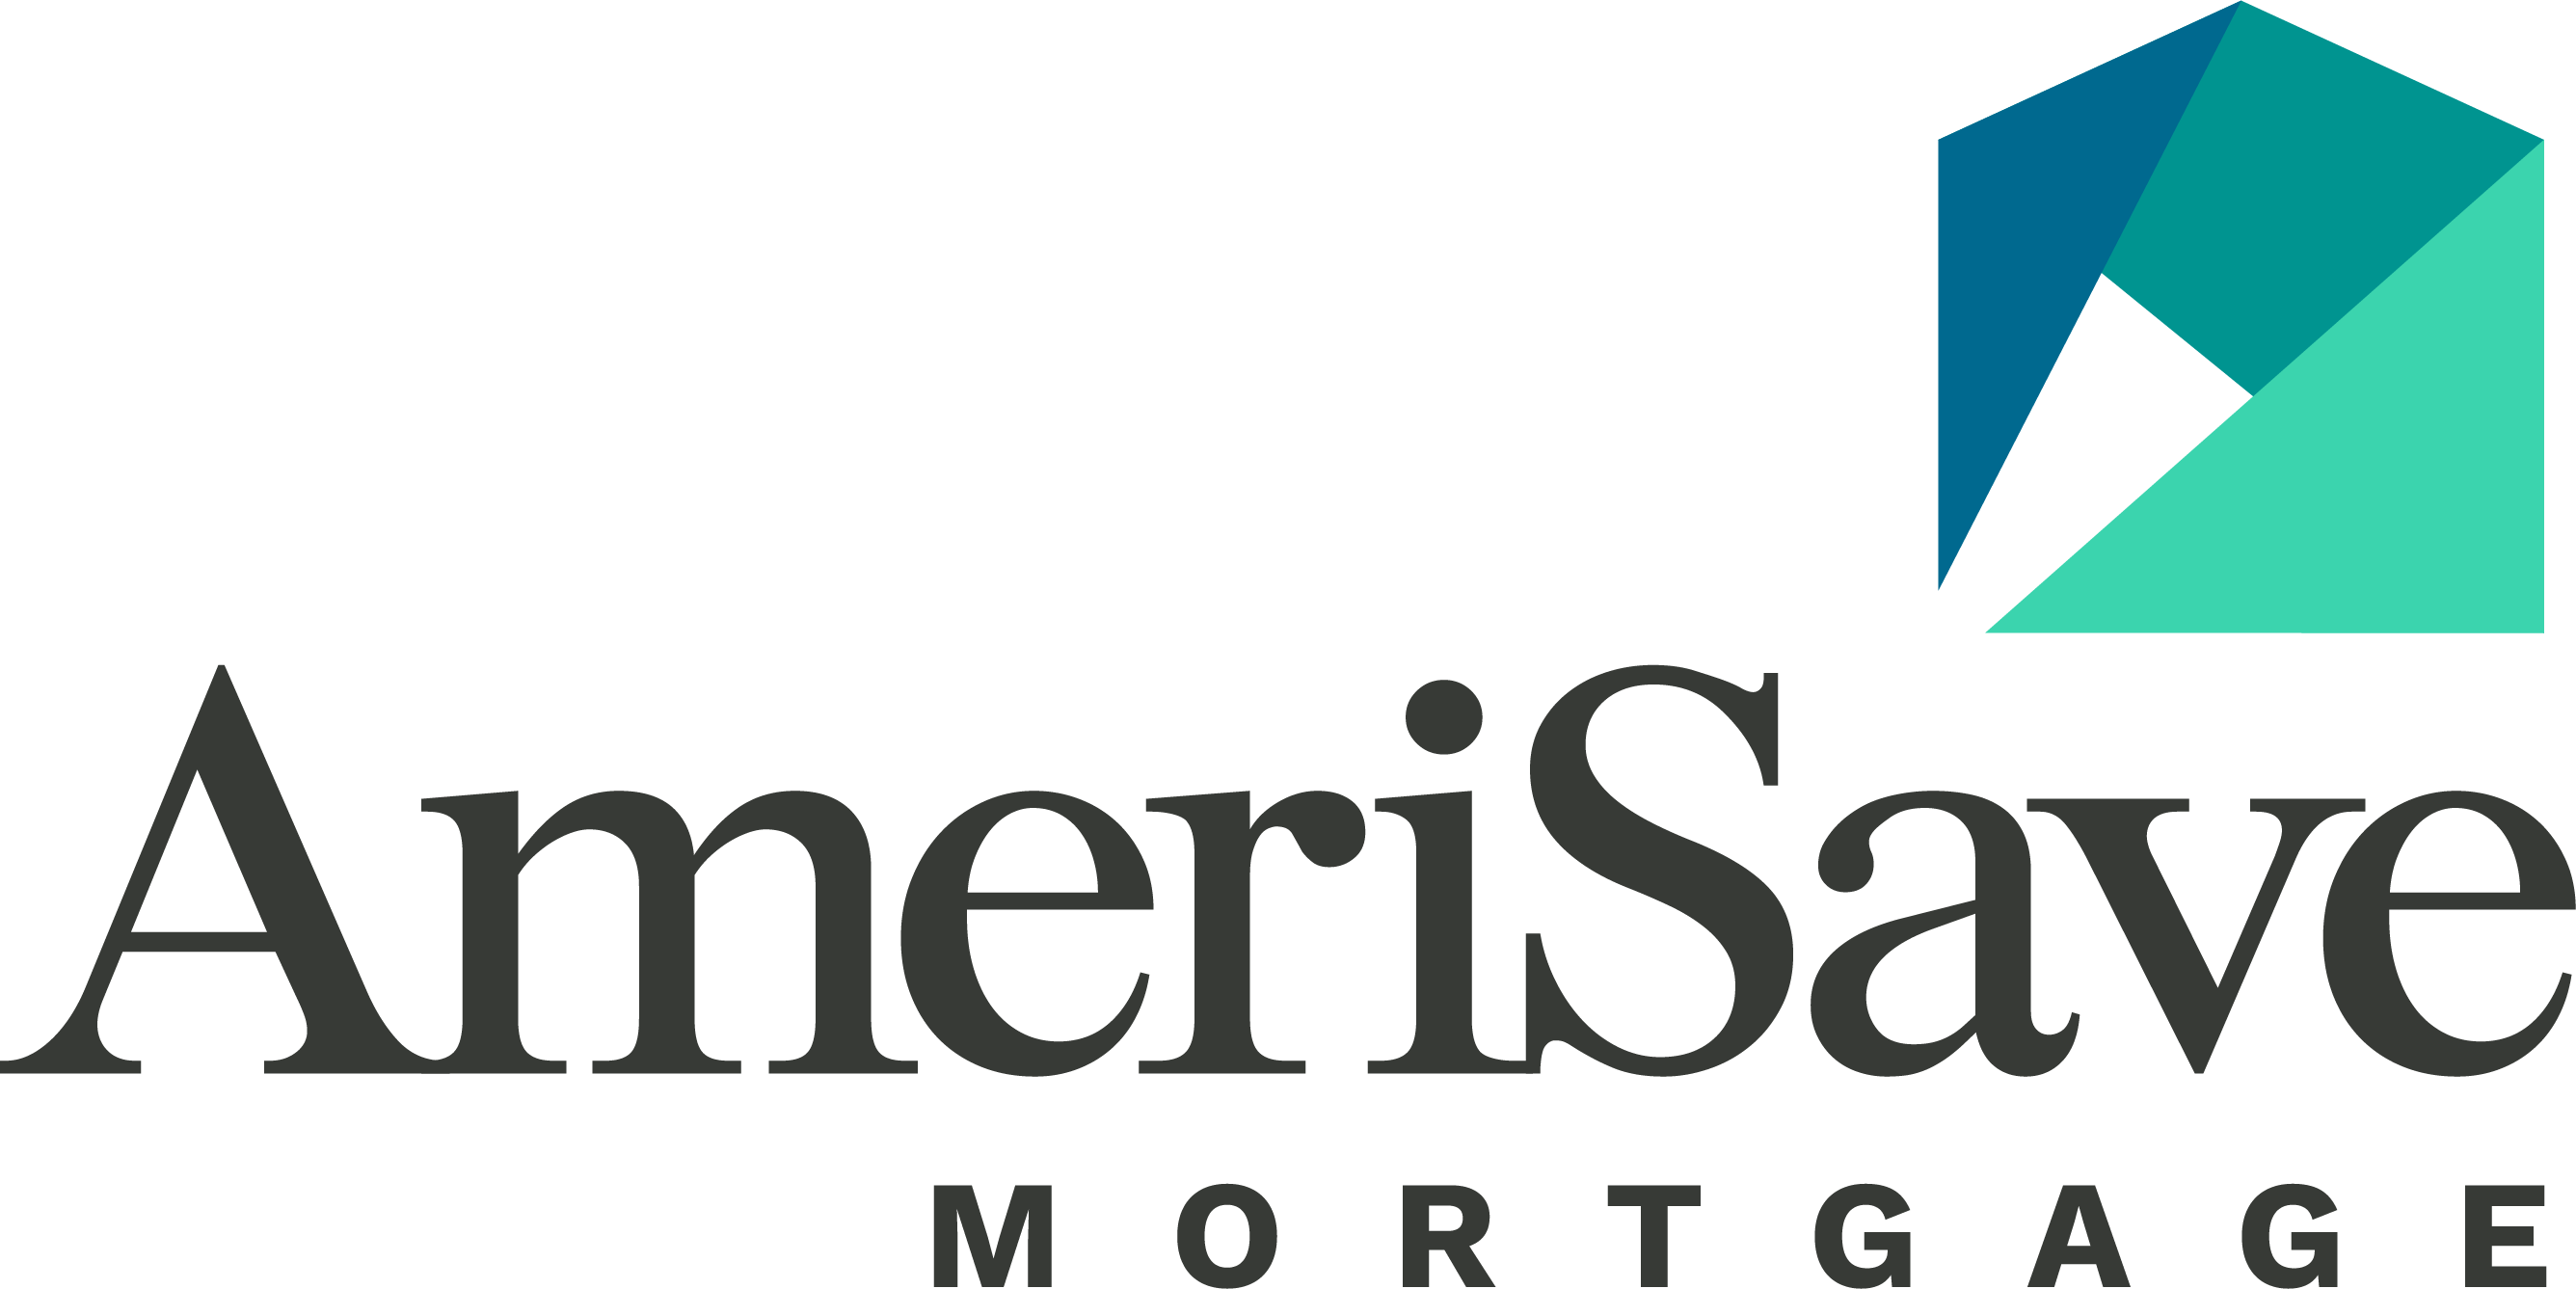 10 Best Nevada Mortgage Lenders of 2021 - NerdWallet